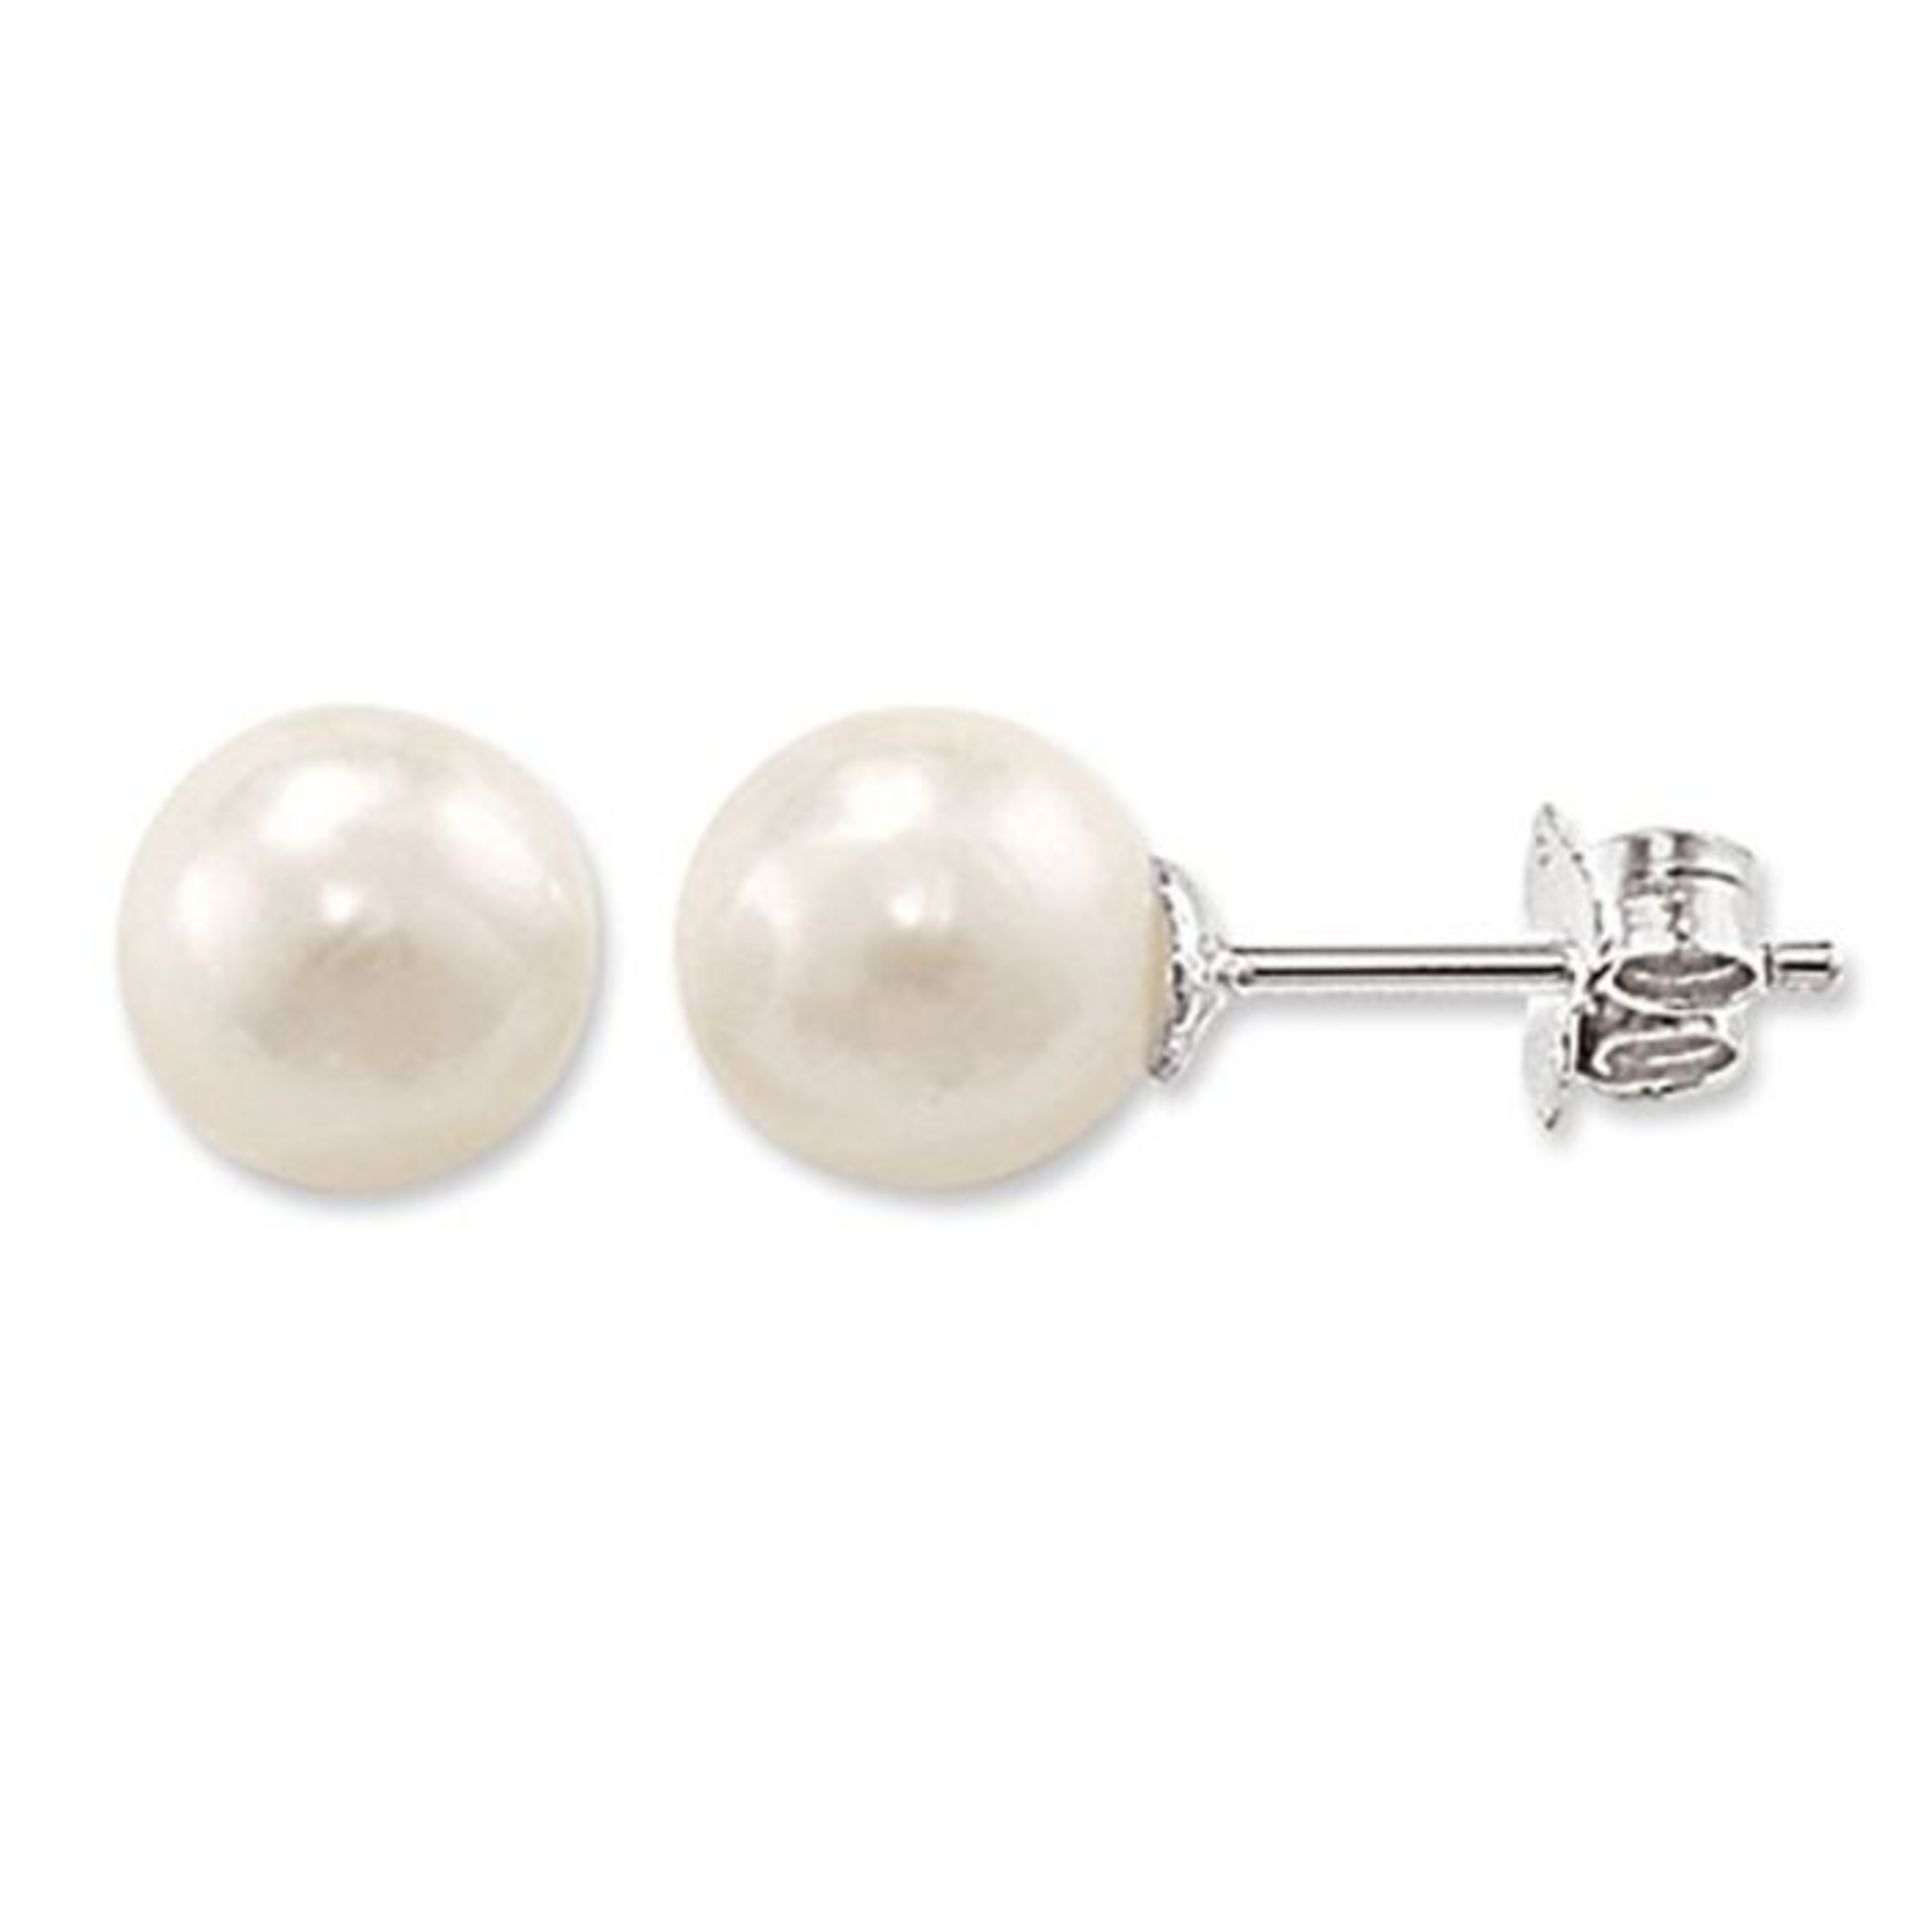 [CRACKED] Thomas Sabo Damen Ohrringe Perlenohrstecker Süßwasserzuchtperle Weiß 925